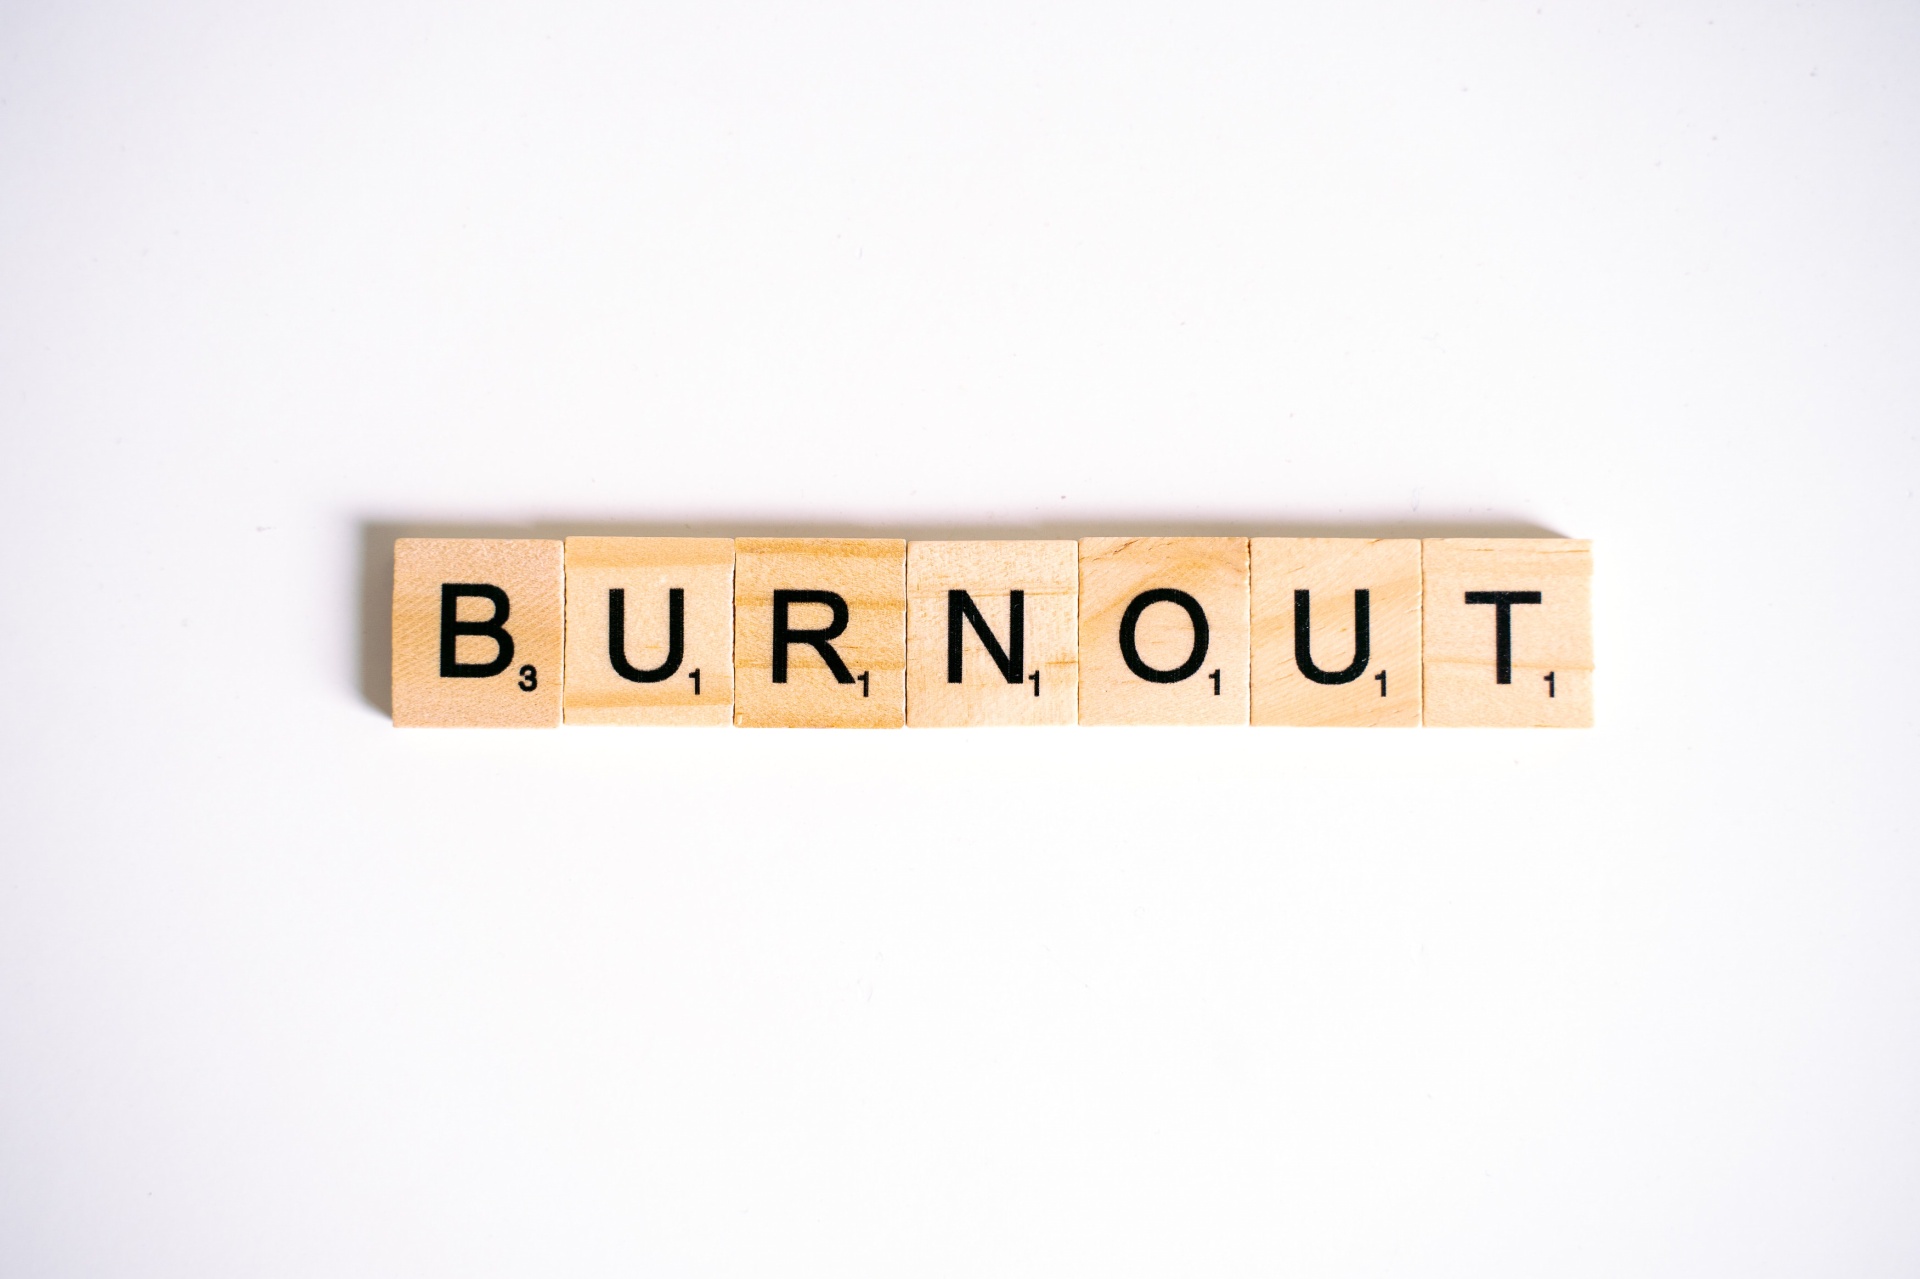 Síndrome de Burnout é reconhecida como doença ocupacional